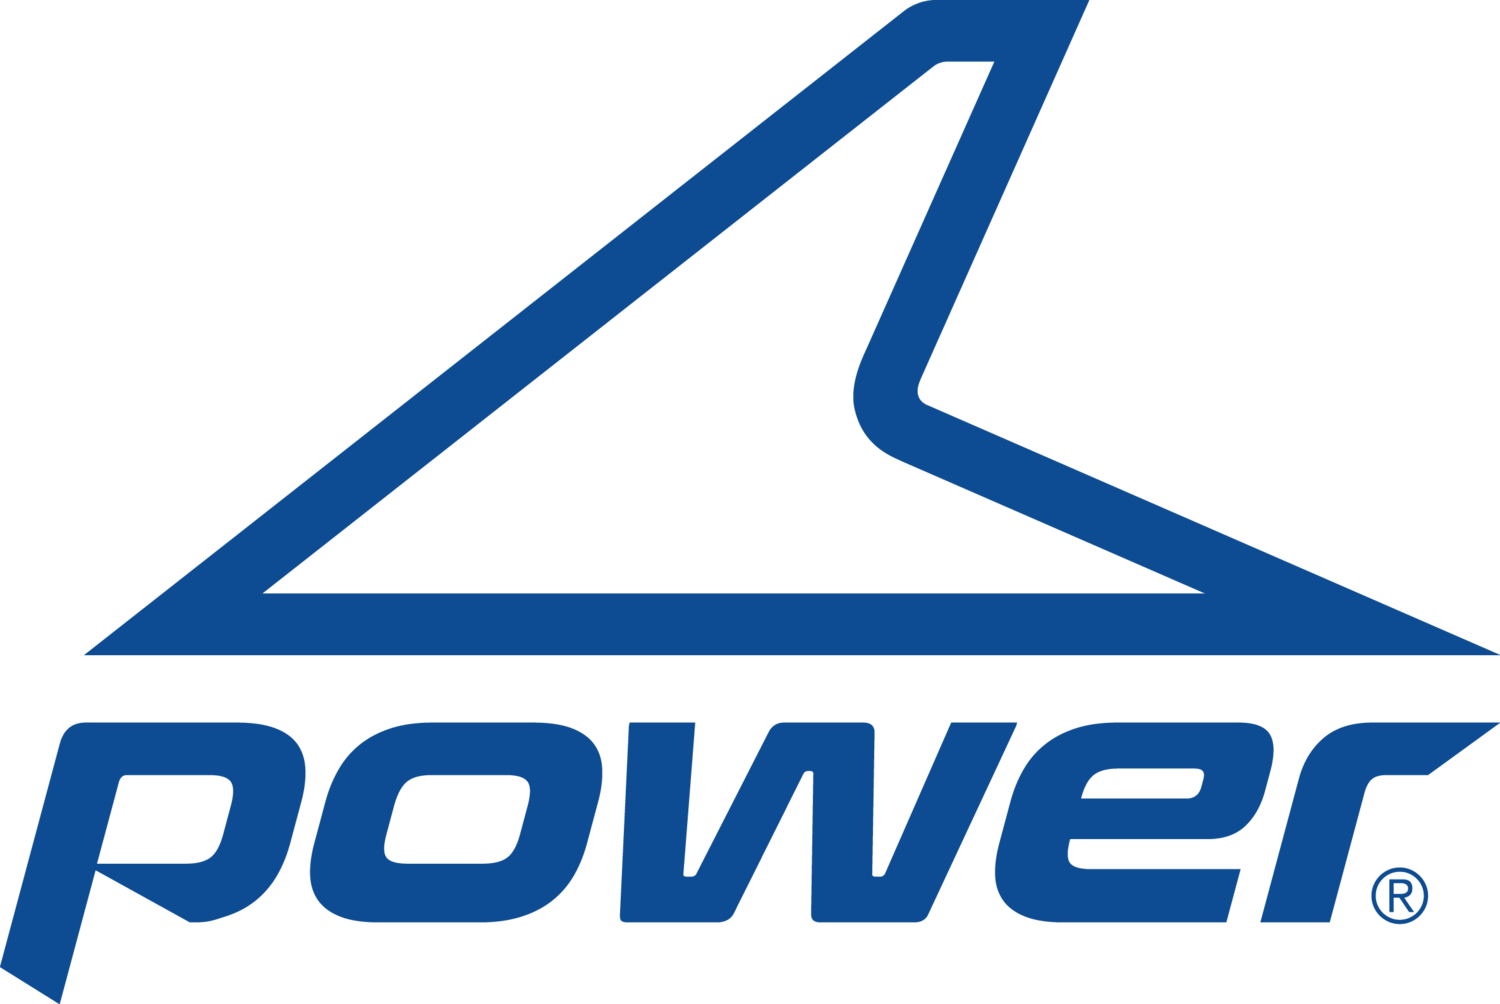 Footwear Company Logo - Power Footwear